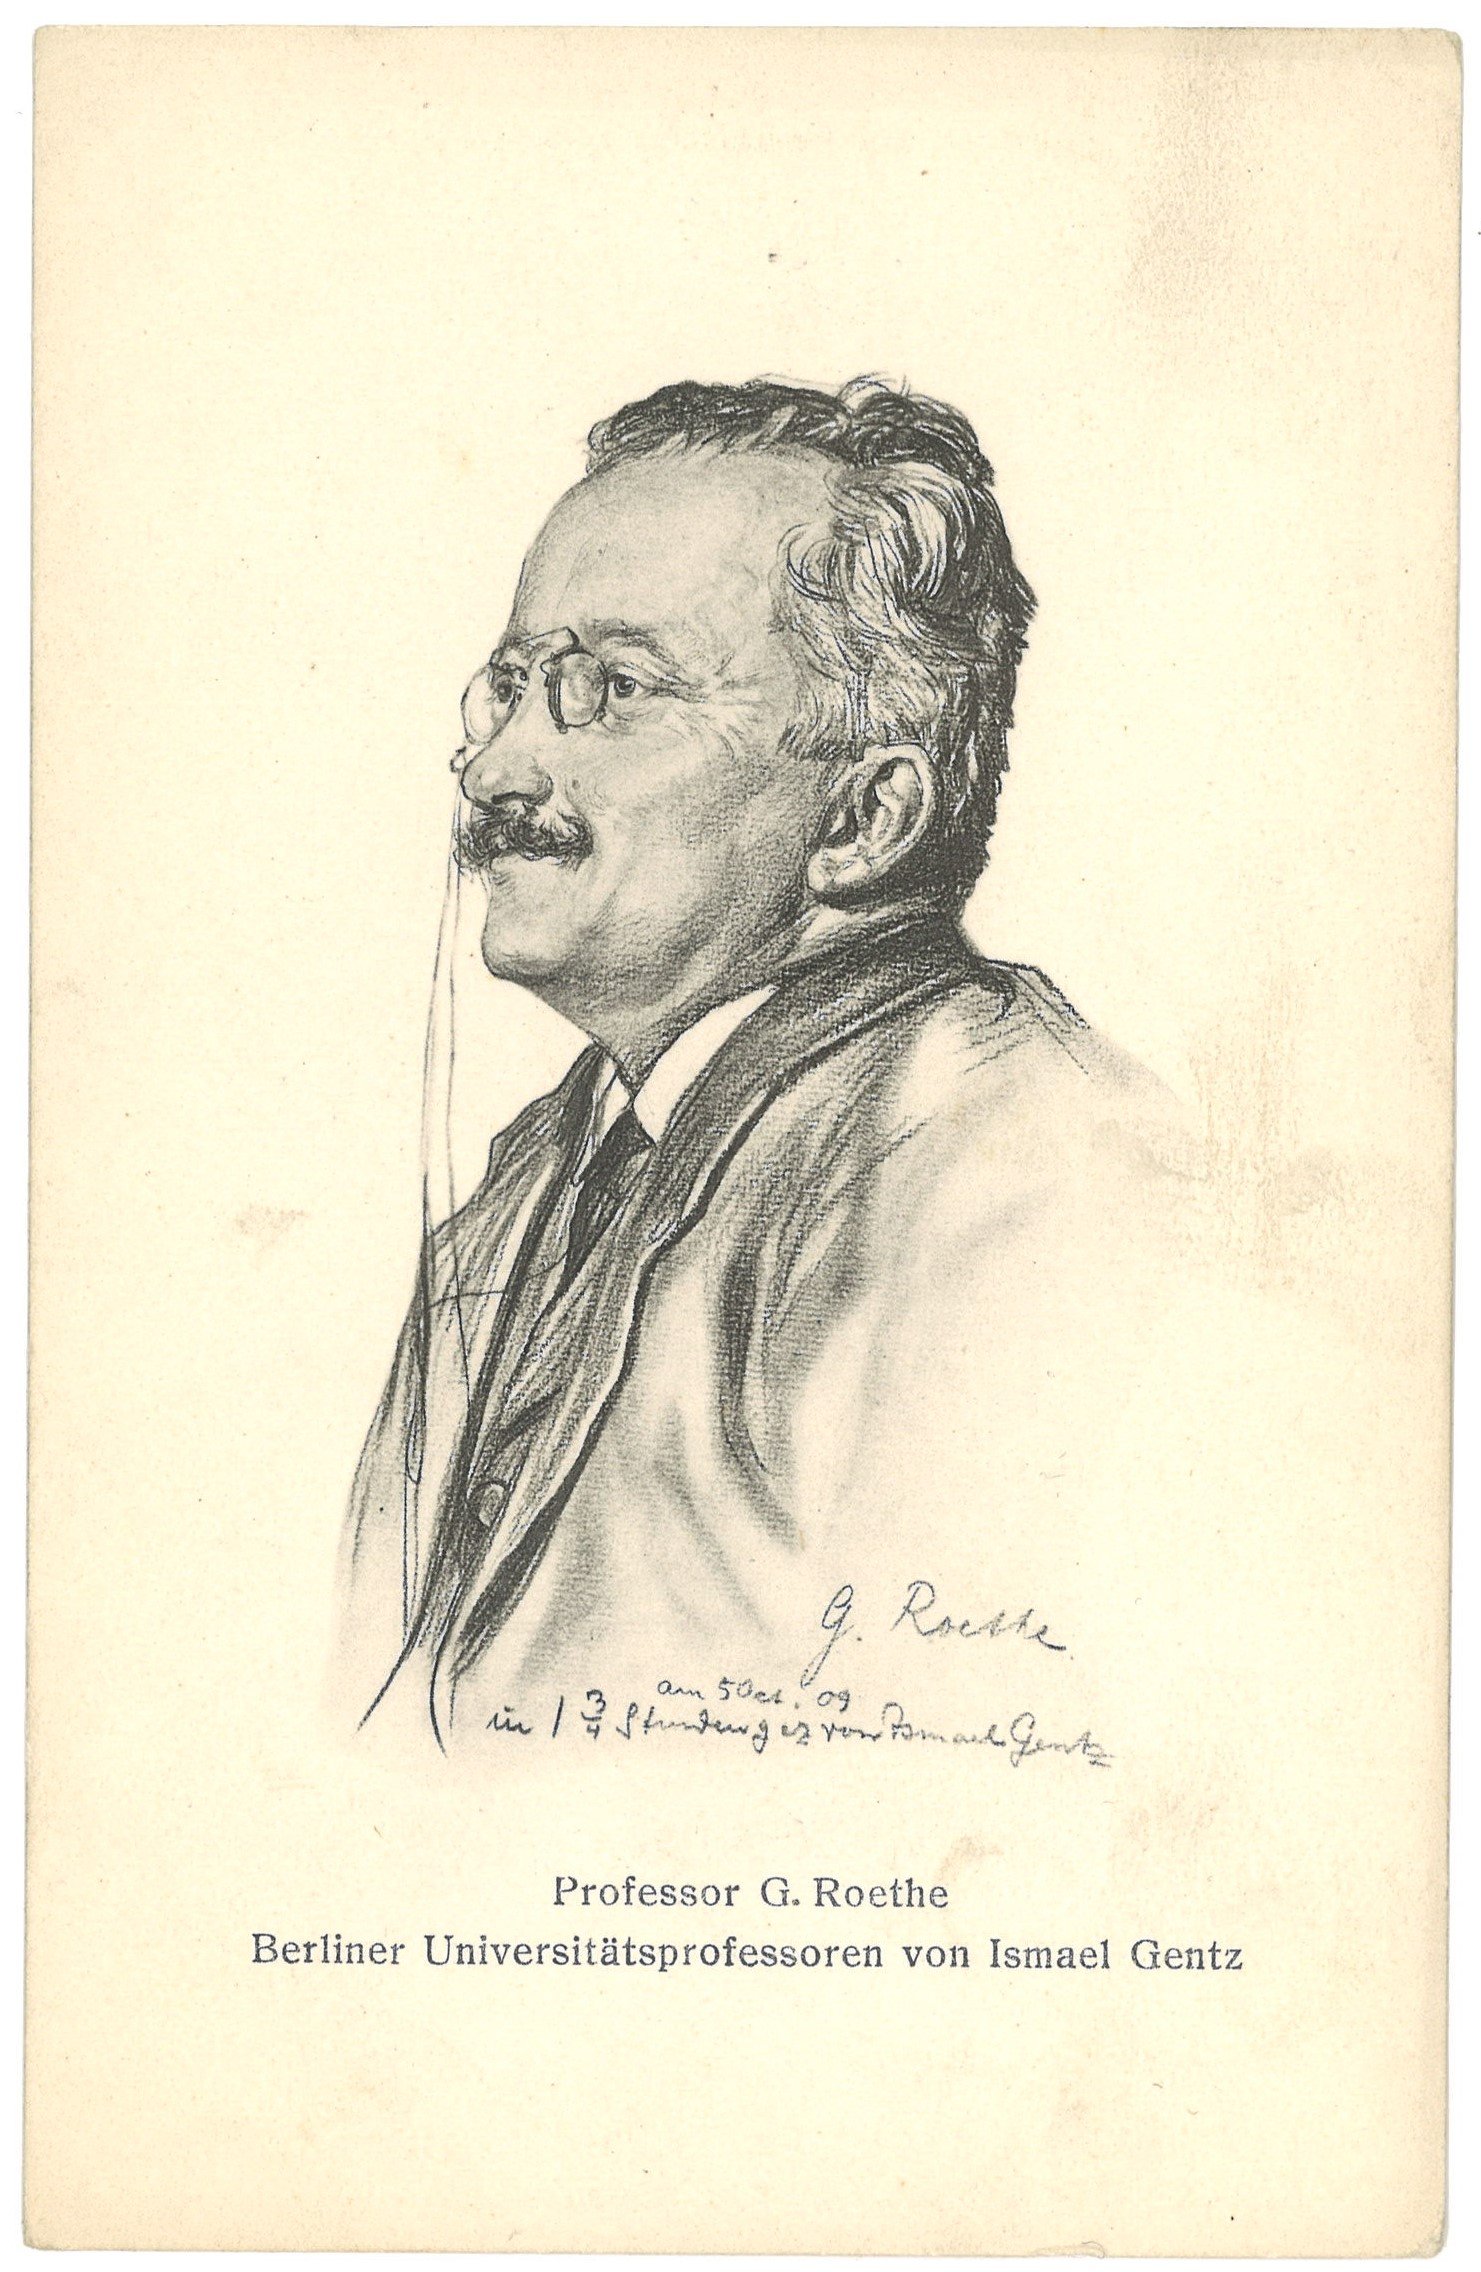 Roethe, Gustav (1859–1926), Germanist (Zeichnung von Ismael Gentz) (Landesgeschichtliche Vereinigung für die Mark Brandenburg e.V. CC BY)